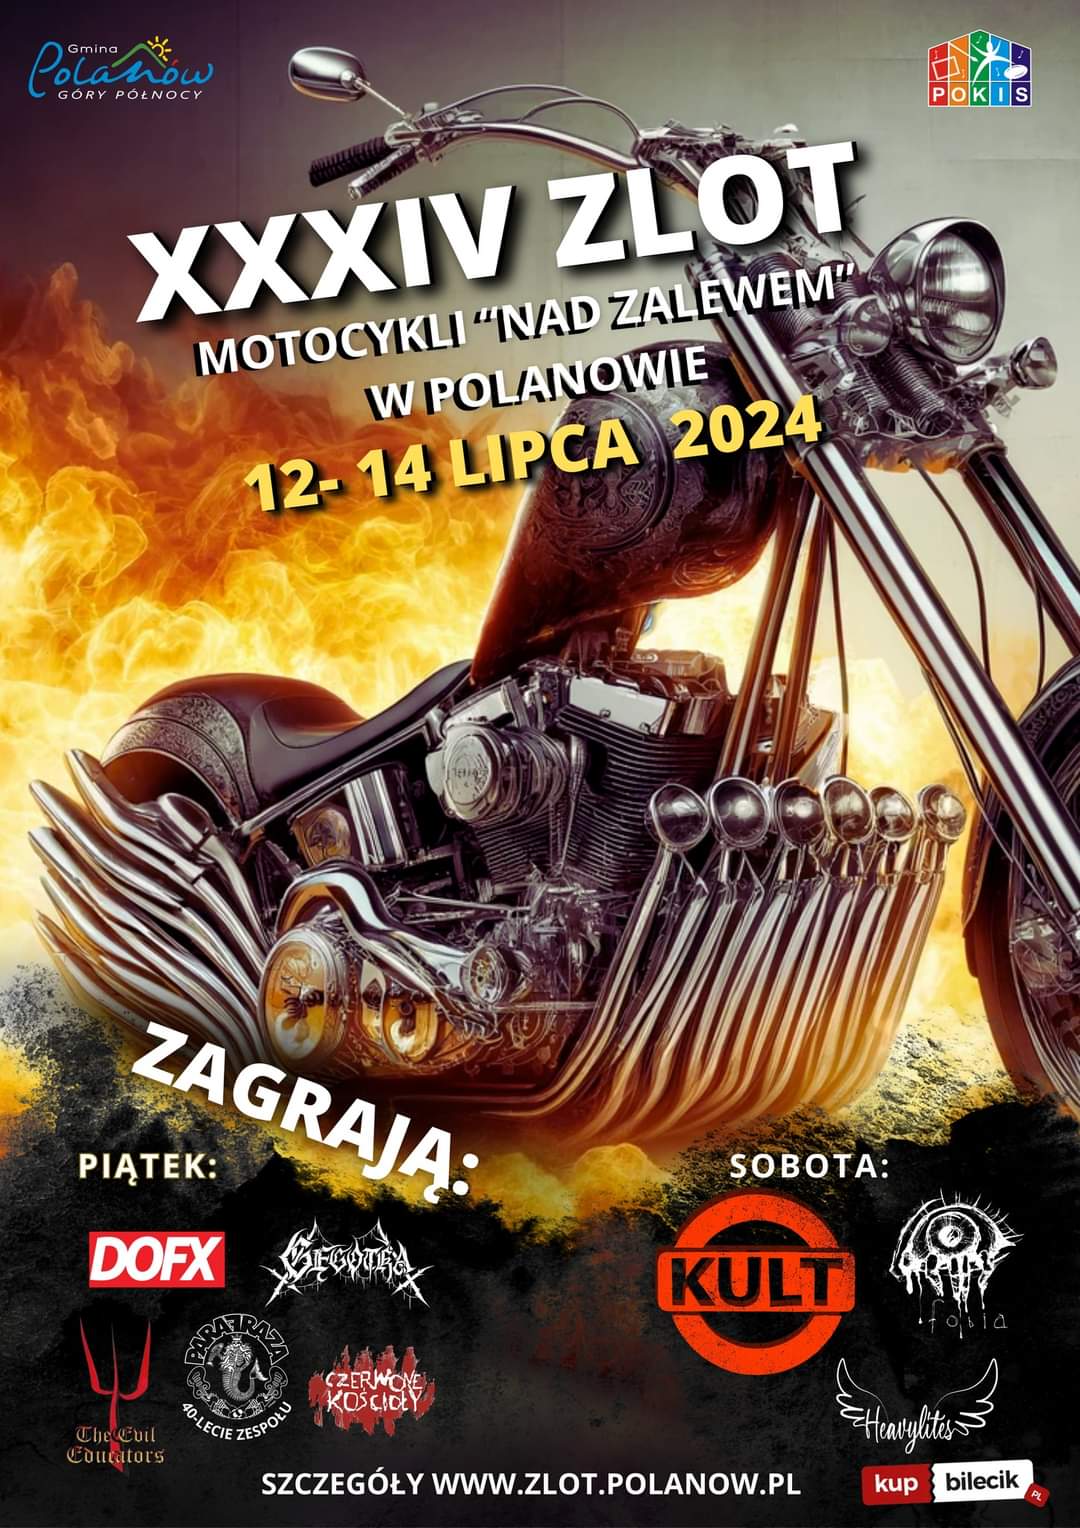 Plakat z zaproszeniem na 34.zlot motocykli nad zalewem w Polanowie 12 do 14 lipca 2024